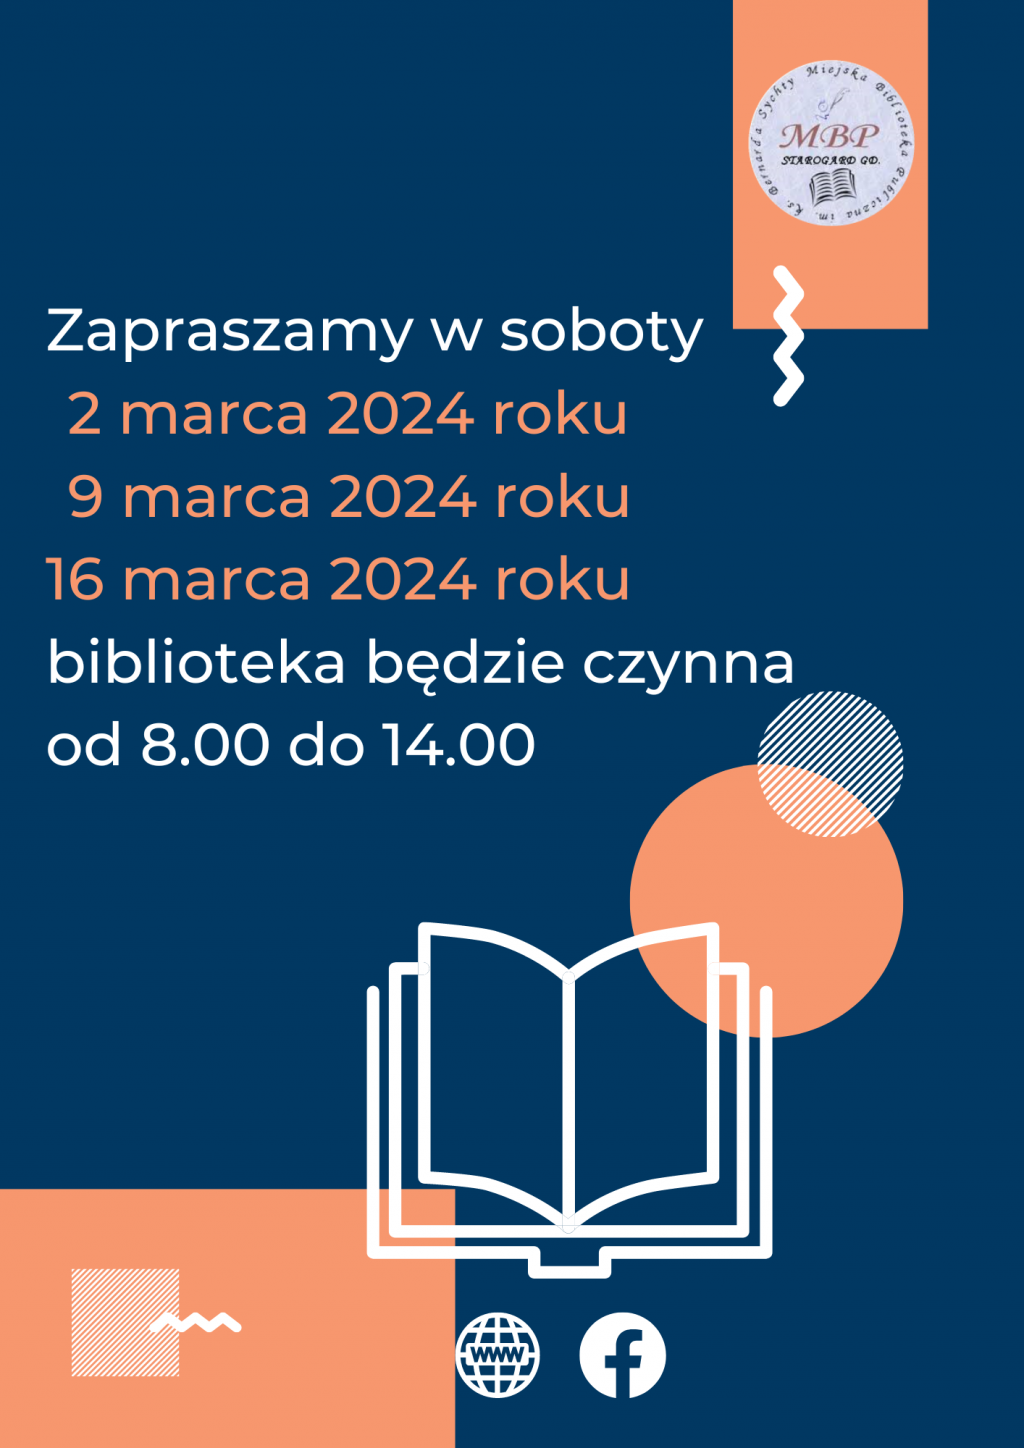 Plakat informujący o pracujących sobotach: soboty 2 marca 2024, 9 marca 2024 i 16 marca 2024 roku, biblioteka będzie czynna od 8.00 do 14.00. Miejska Biblioteka Publiczna w Starogardzie Gdańskim.